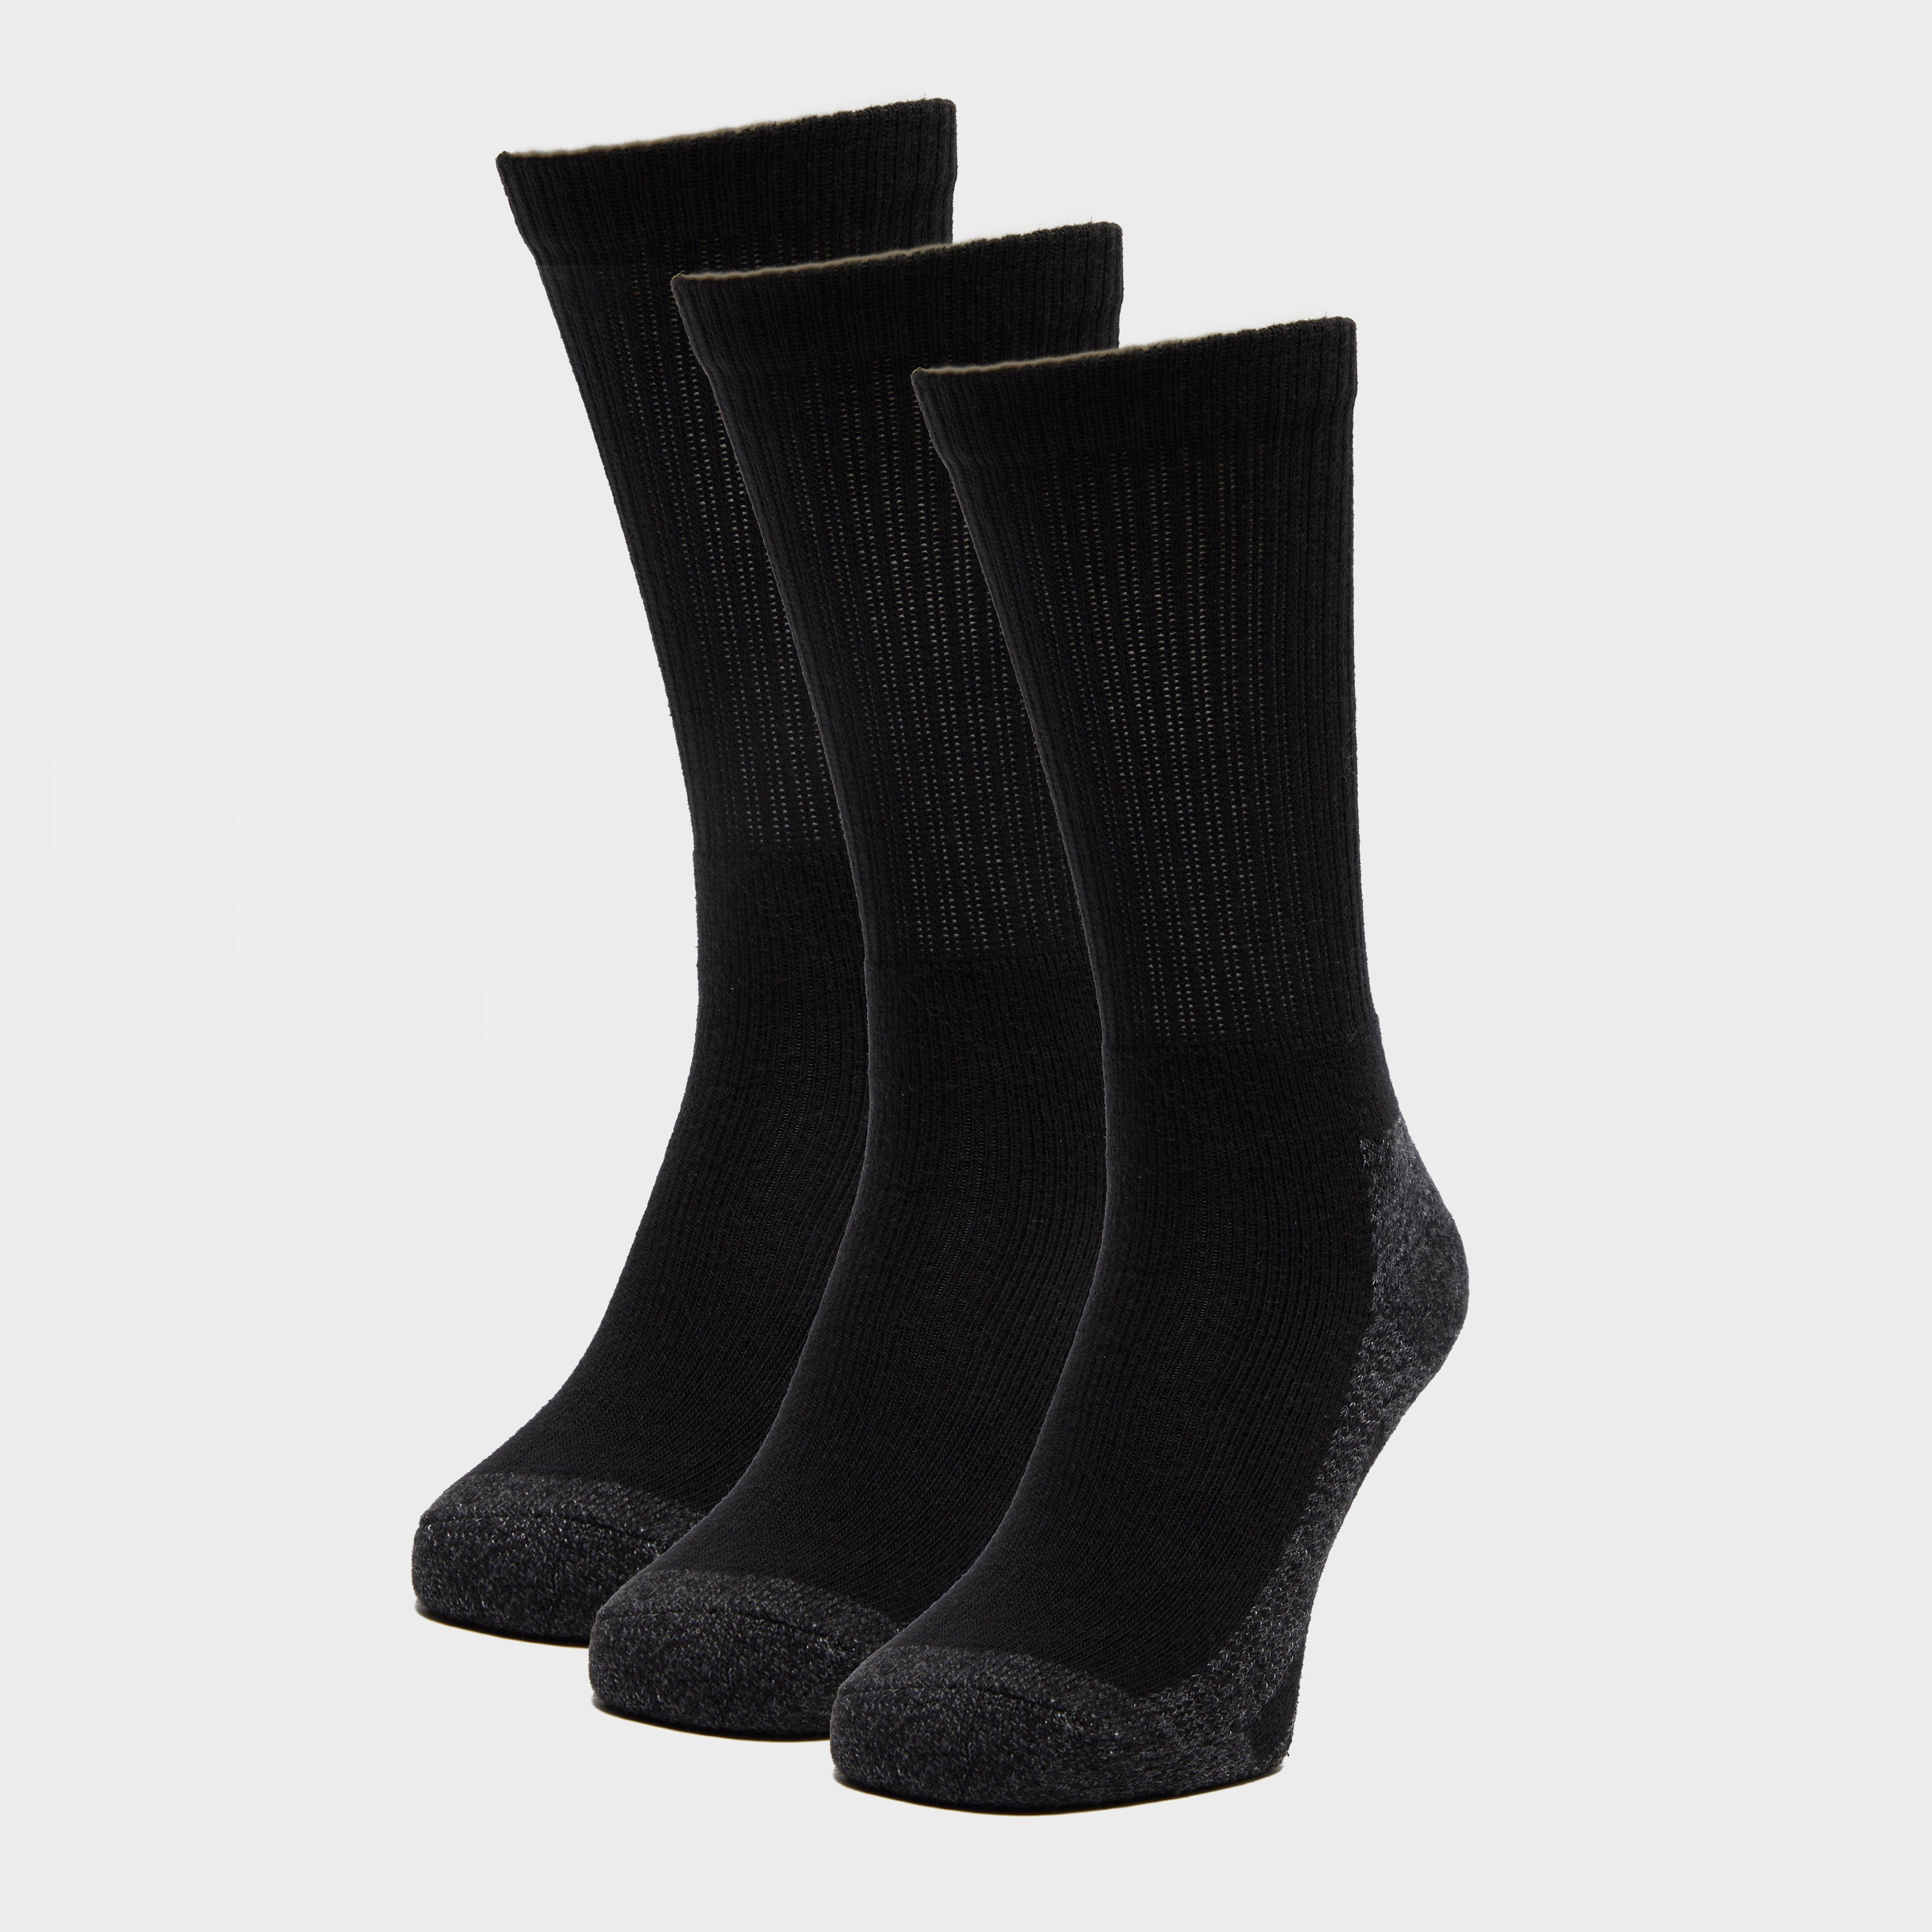 Peter Storm 3 Pack Work Socks - Black  Black